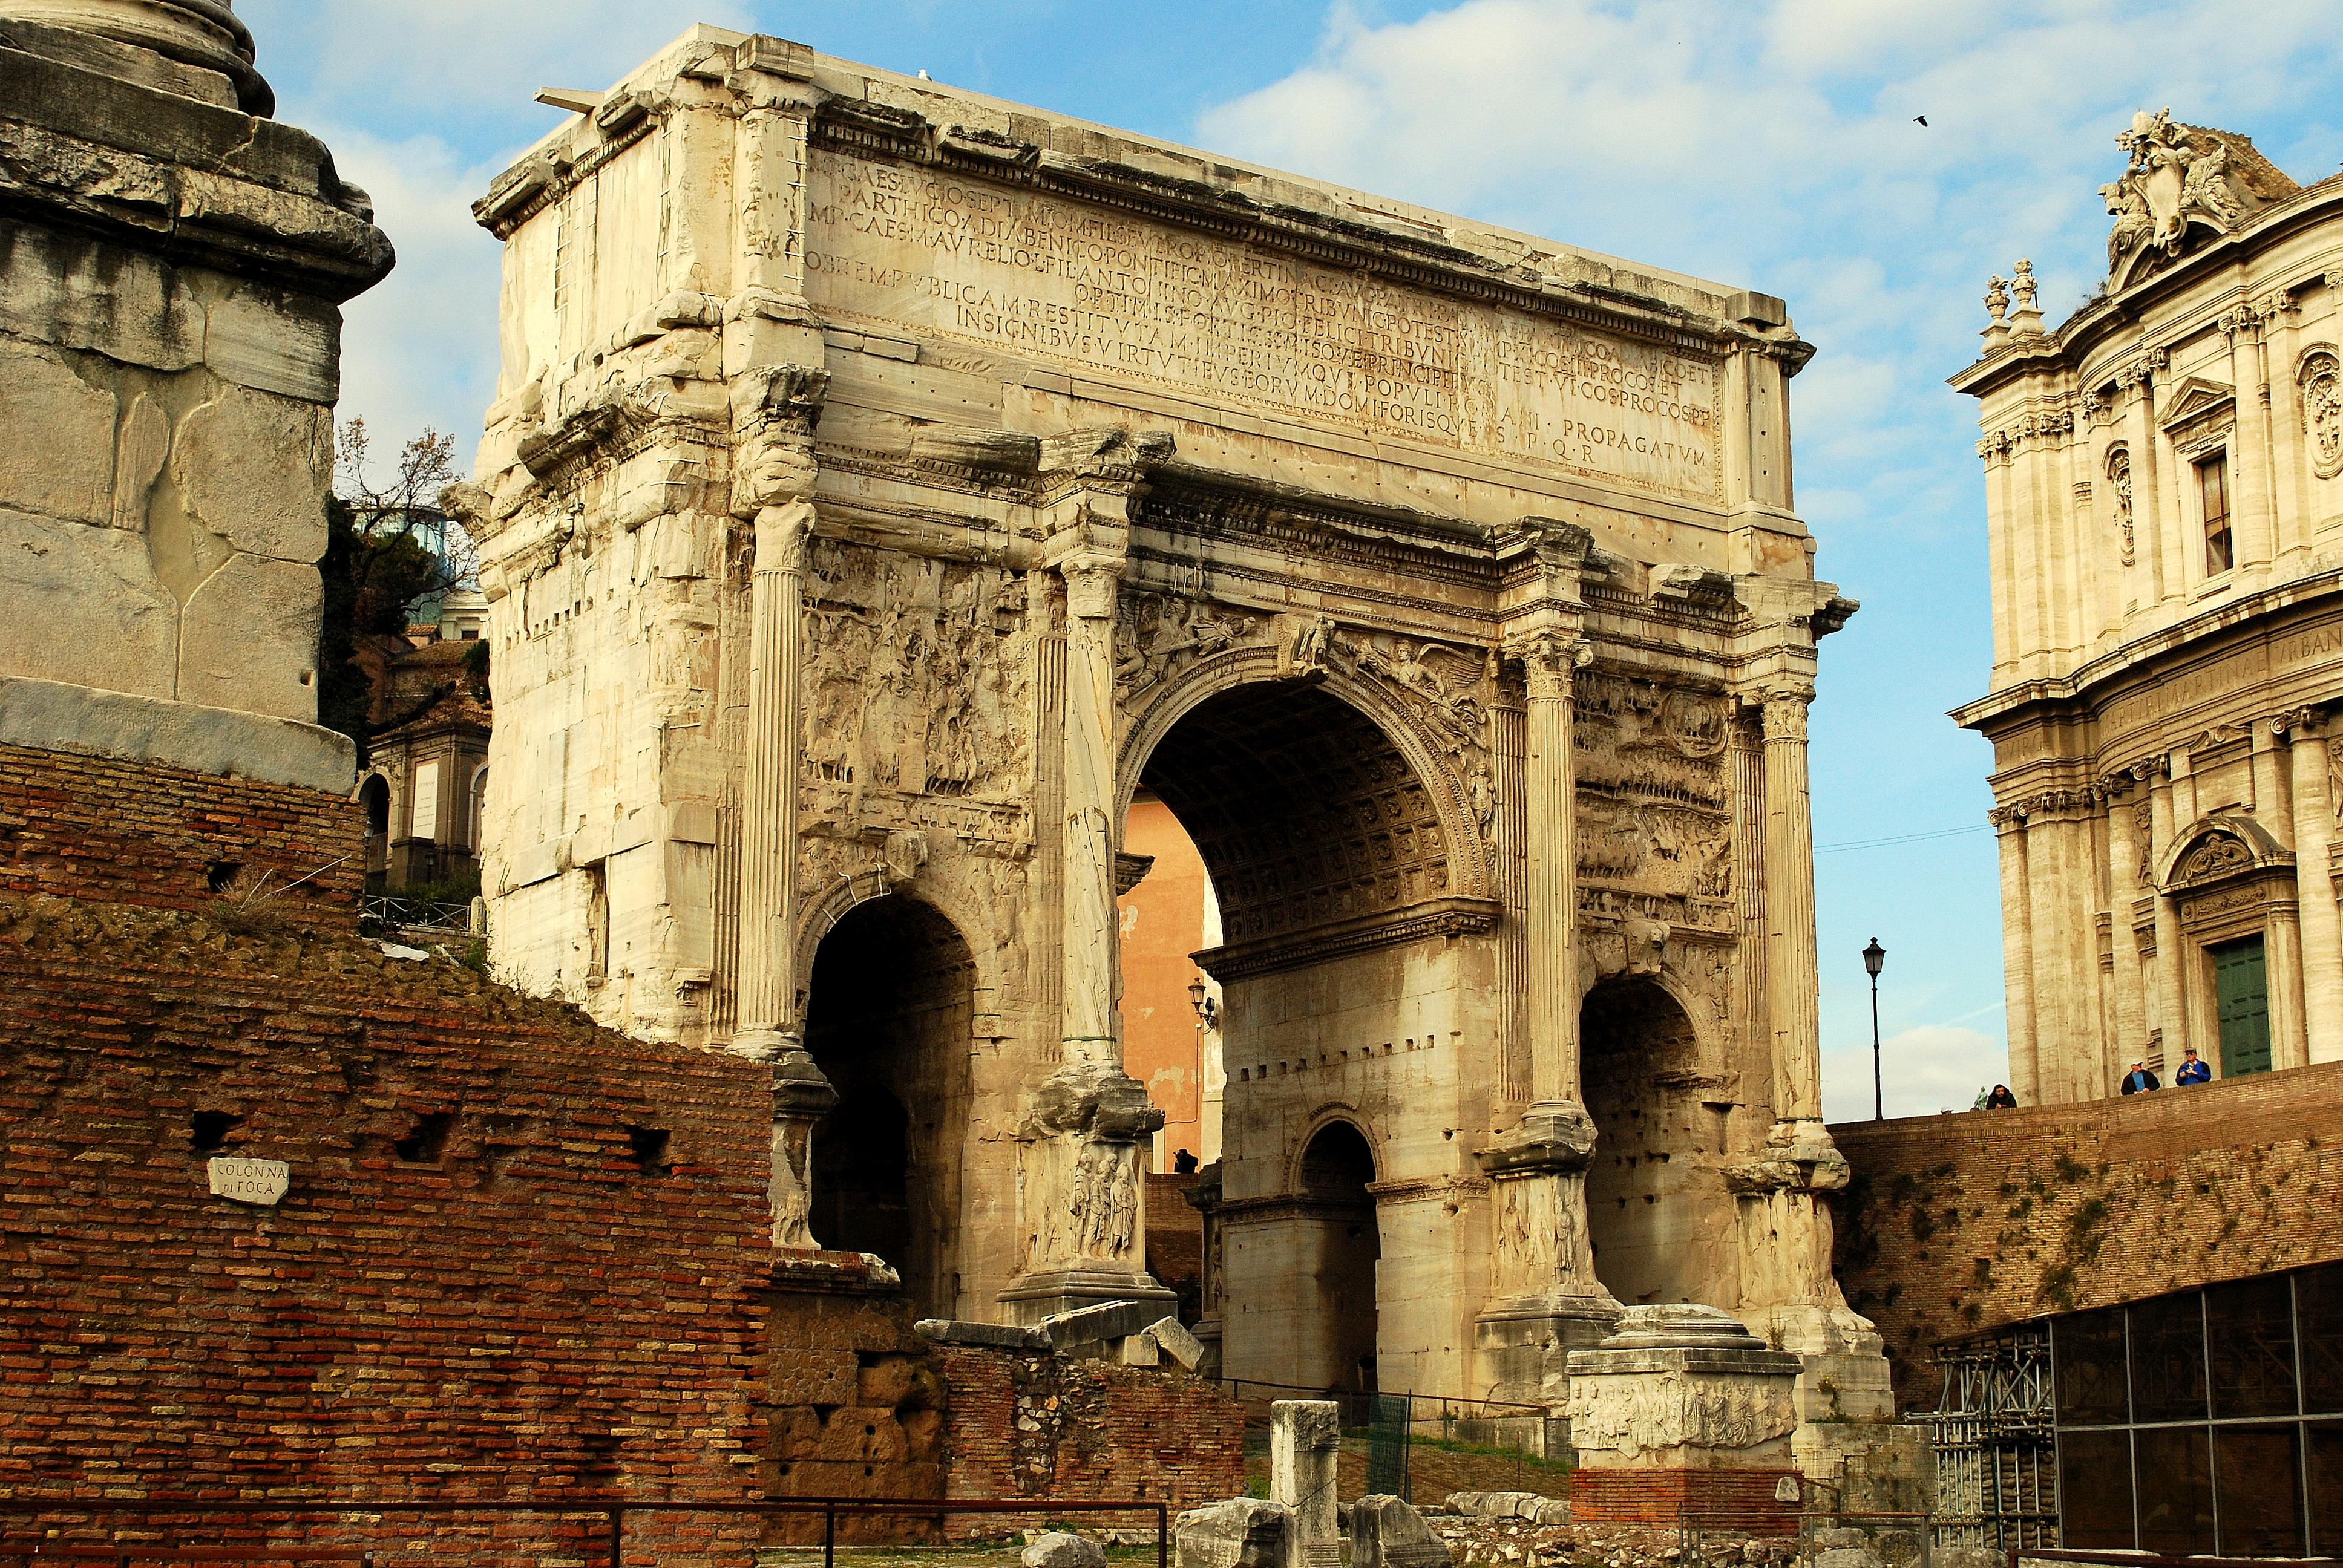 Arch of Septimius Severus